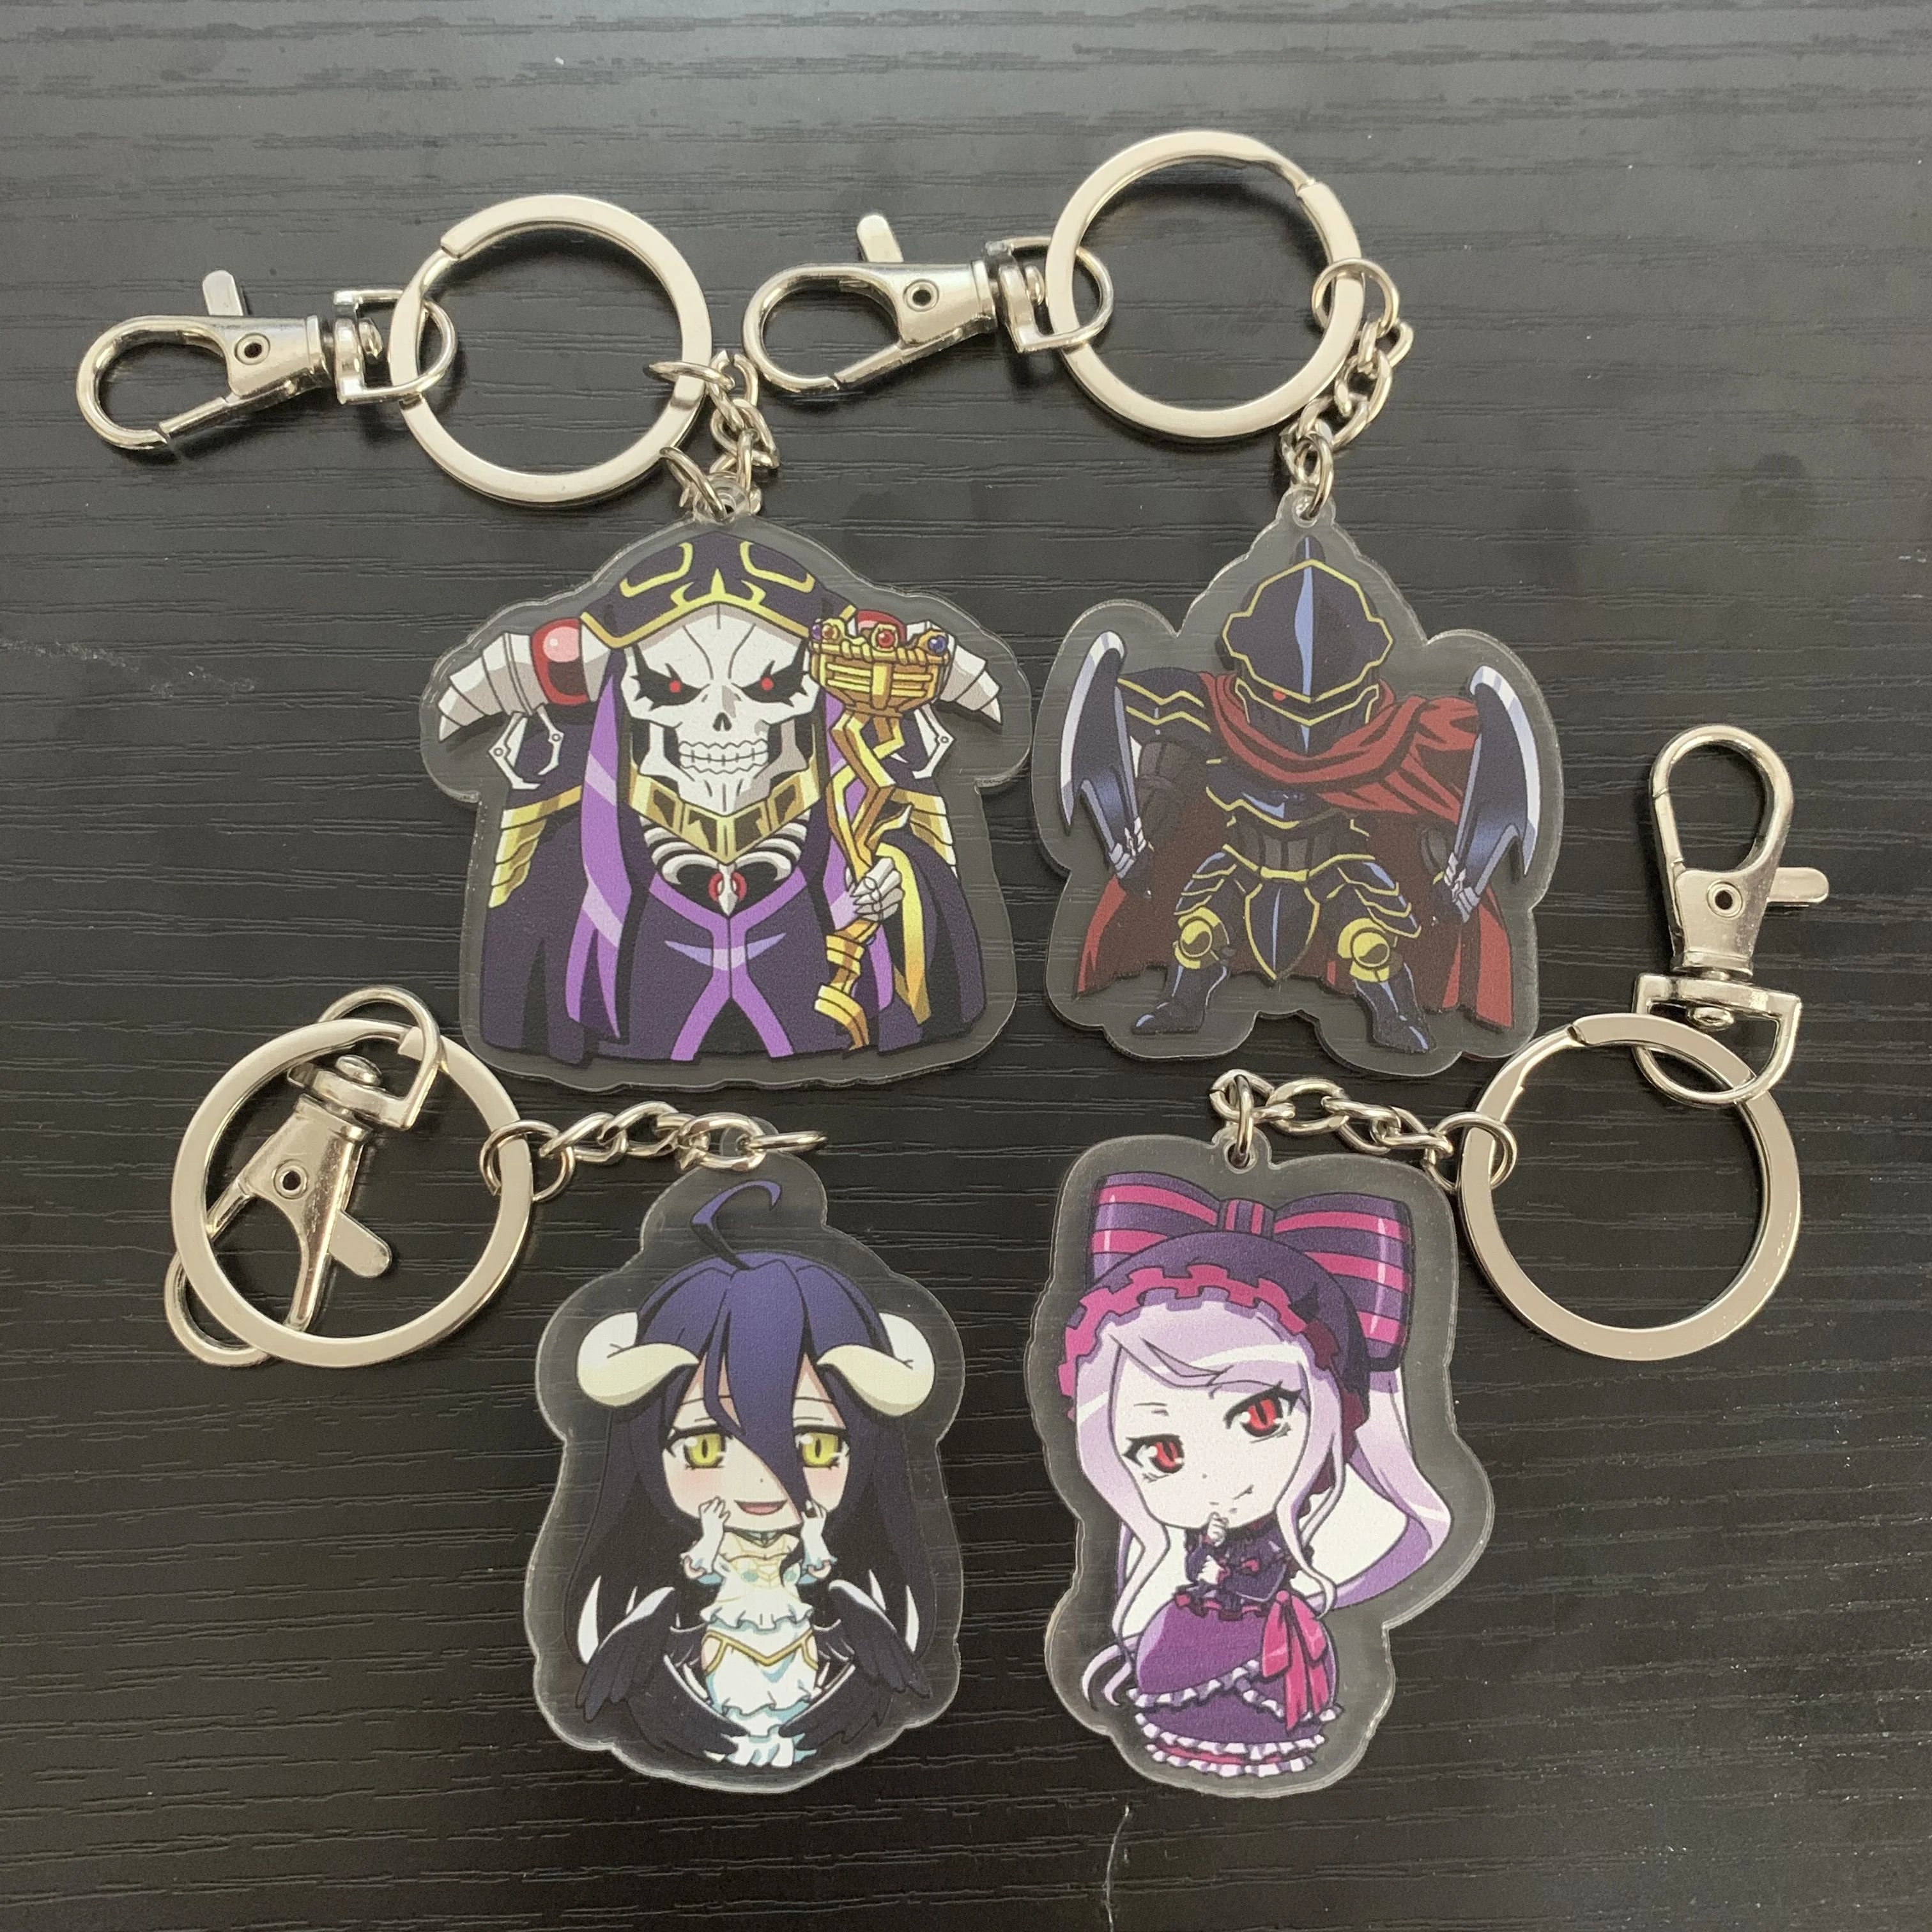 Anime Overlord Ainz Ooal Gown albedo Acrylic Keychain Pendant Keyring Gifts 